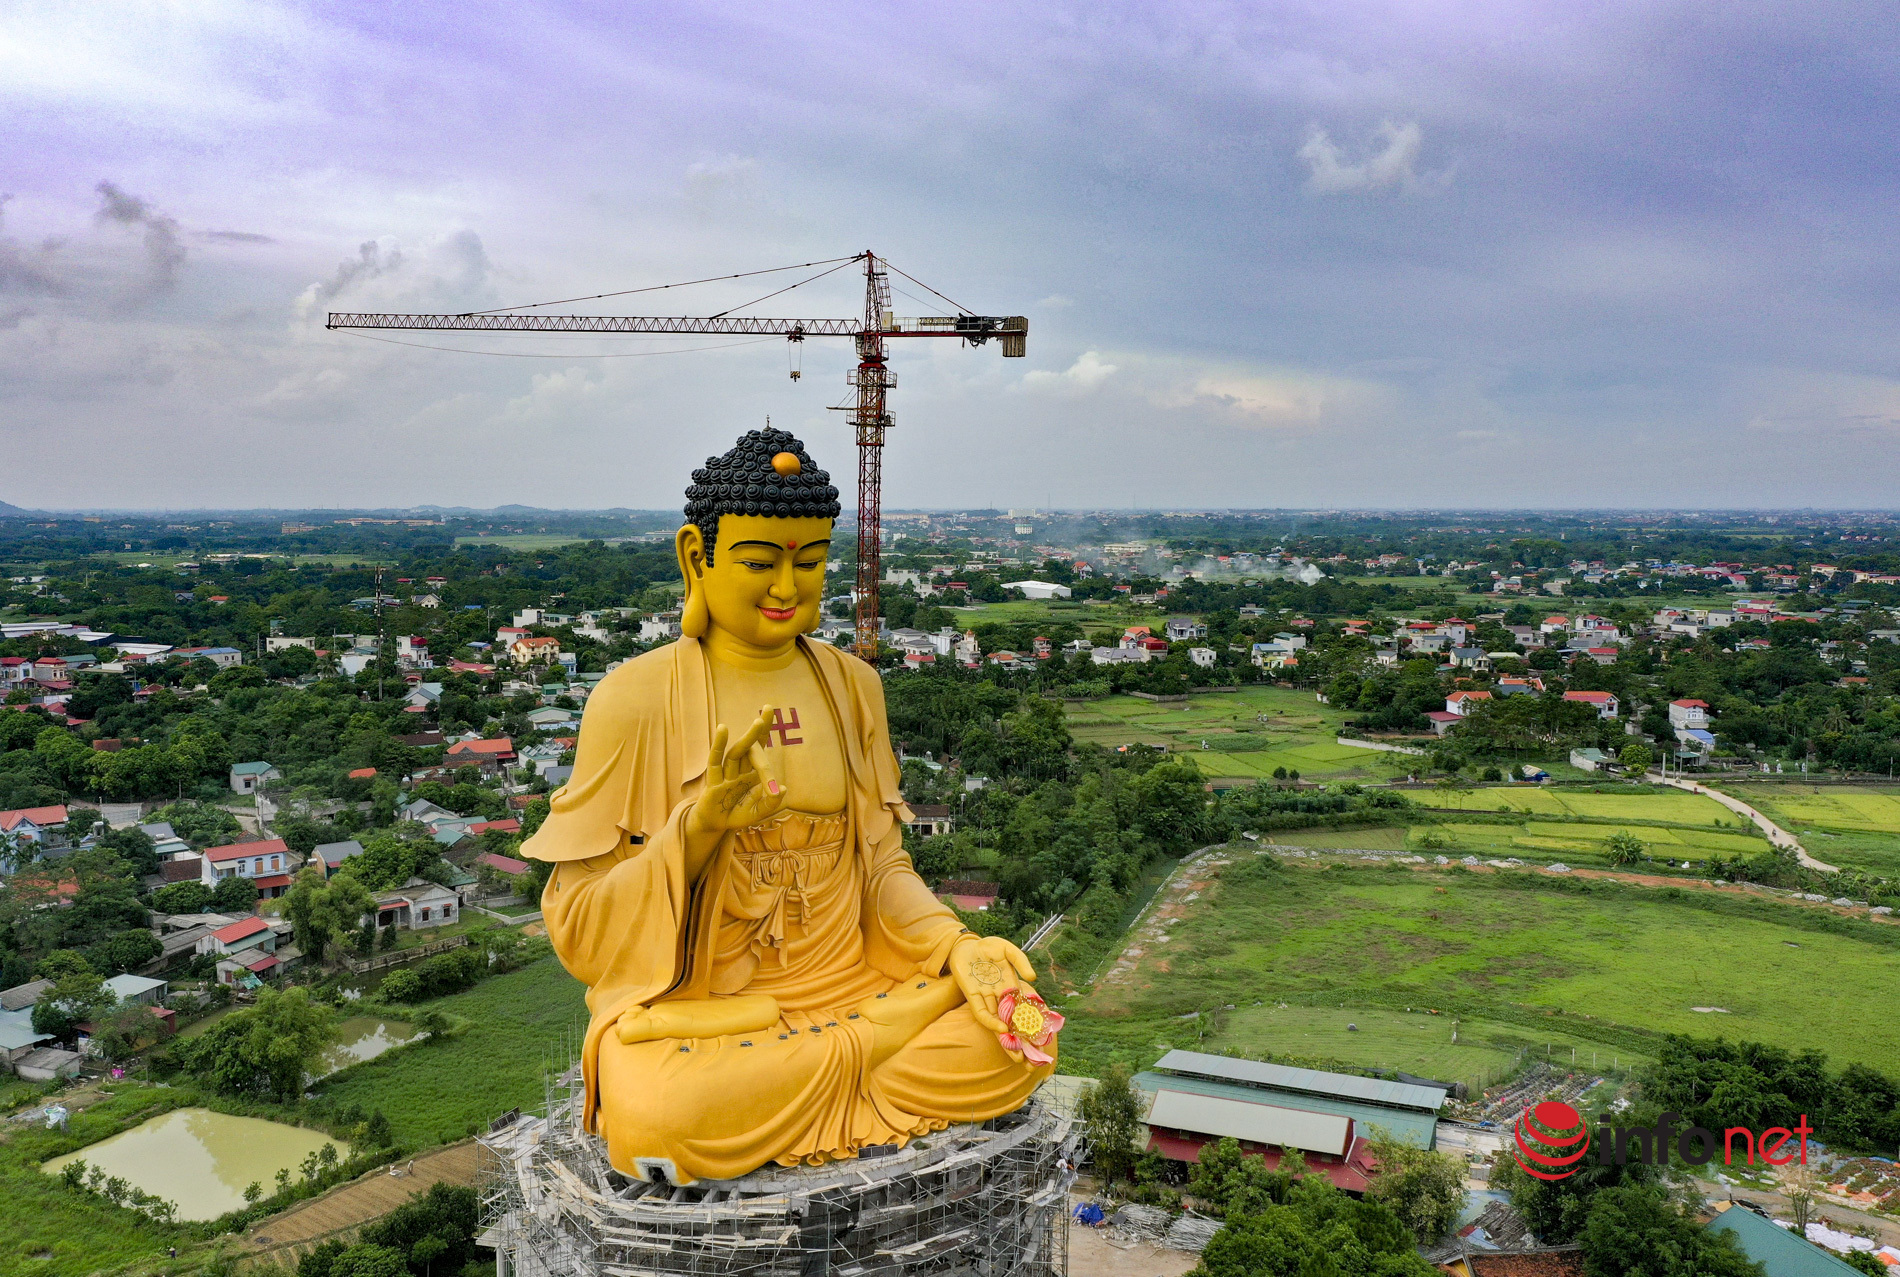 Nằm trong khu vực Đông Nam Á, đại tượng Phật lớn nhất đã trở nên nổi tiếng và gây chú ý cho khách du lịch đến tham quan. Đây là một điểm đến tuyệt vời cho những ai muốn trải nghiệm và chiêm ngưỡng nghệ thuật tuyệt vời. Hãy đến đó và tham quan nhé!